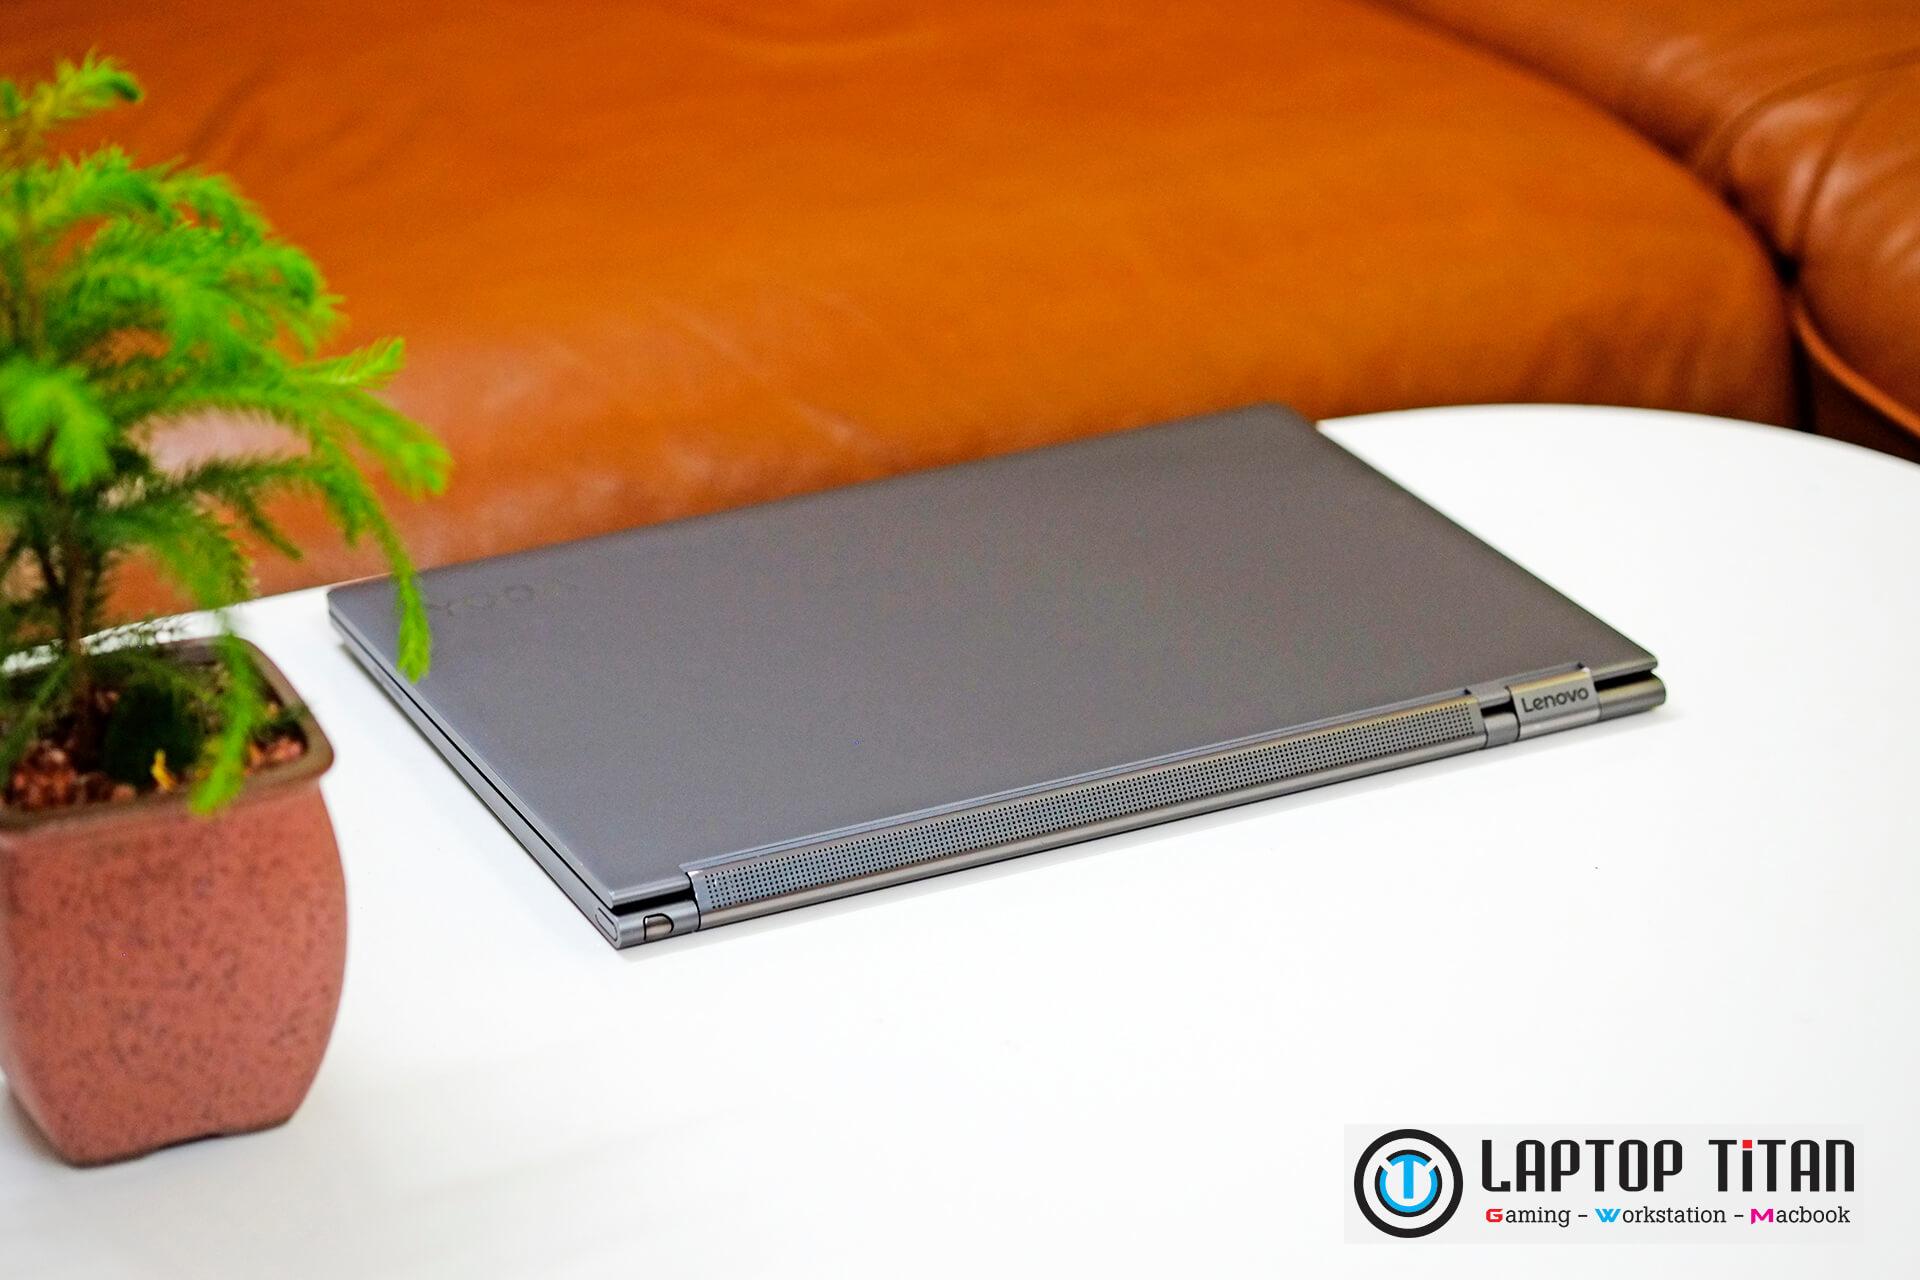 Lenovo Yoga C930 Laptoptitan 05